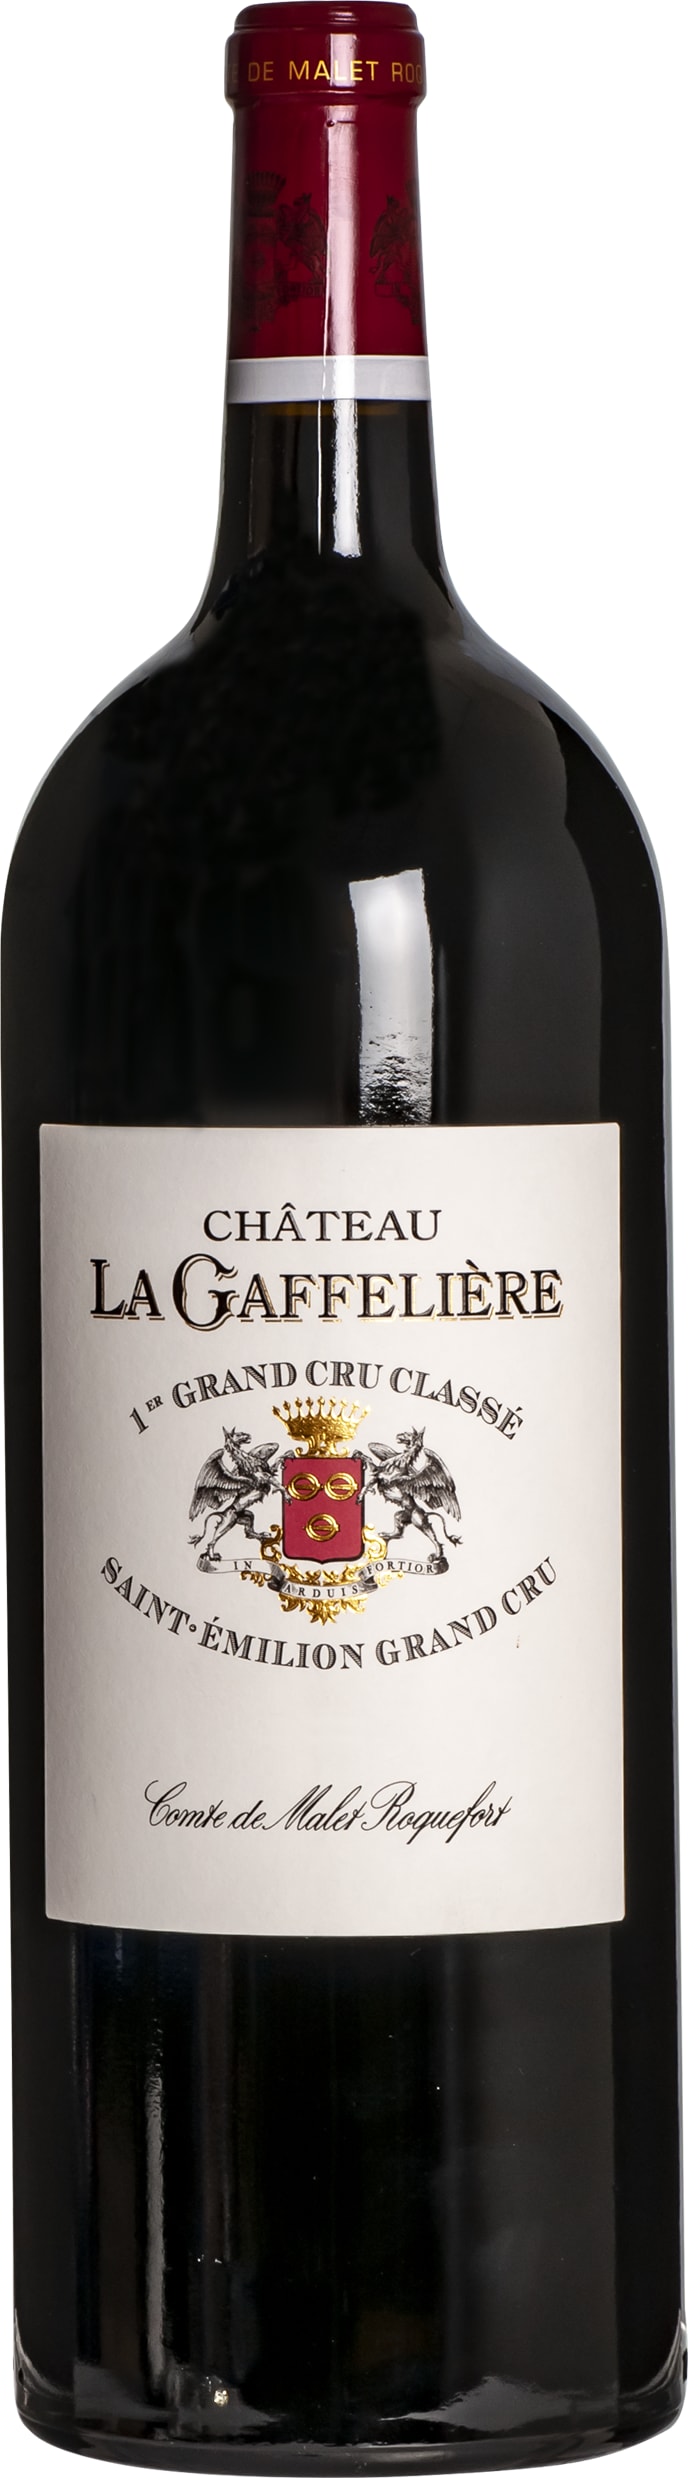 Chateau La Gaffeliere Saint Emilion Premier Grand Cru Classe 2014 75cl - Buy Chateau La Gaffeliere Wines from GREAT WINES DIRECT wine shop